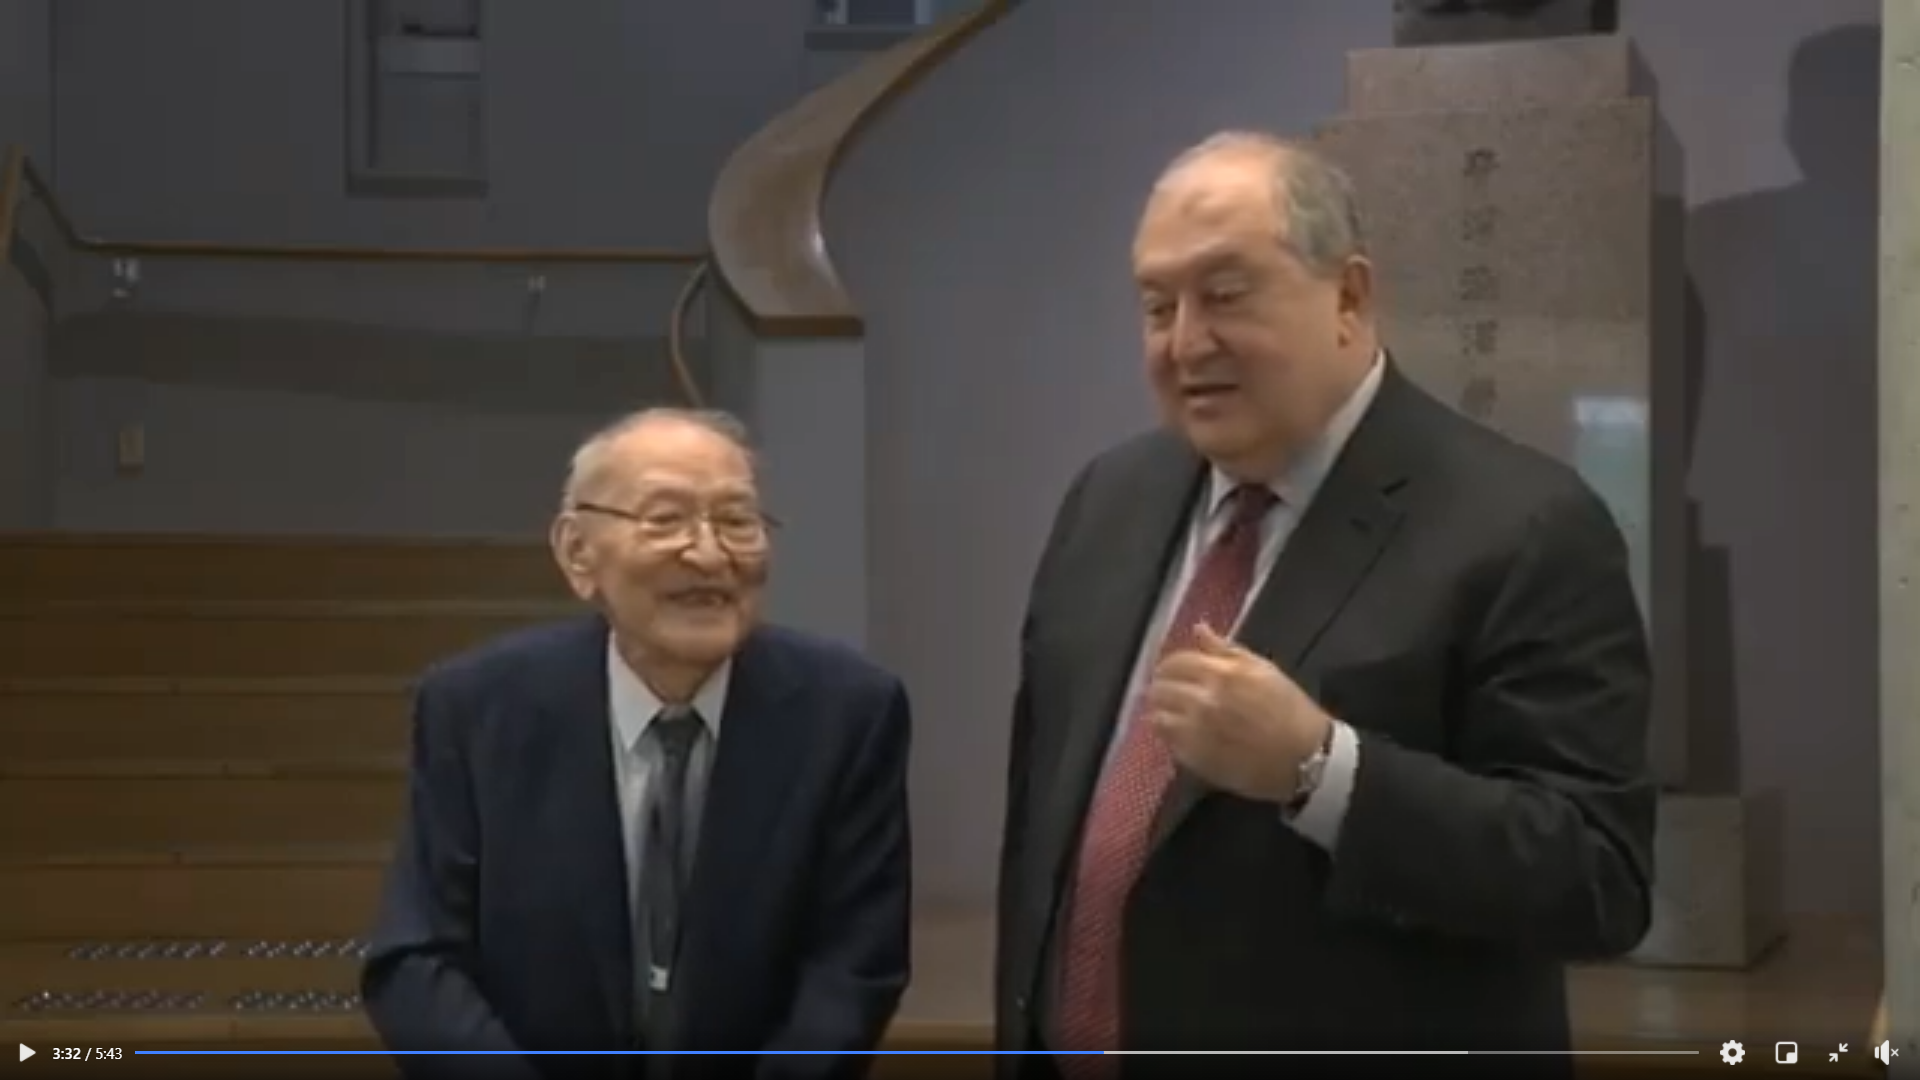 ՀՀ նախագահ Արմեն Սարգսյանն այսօր Տոկիոյում այցելել է հայտնի ճապոնացի գործարար և բարերար Շիբուսավա Էիչի հուշահամալիր-հիմնադրամ․ Տեսանյութ